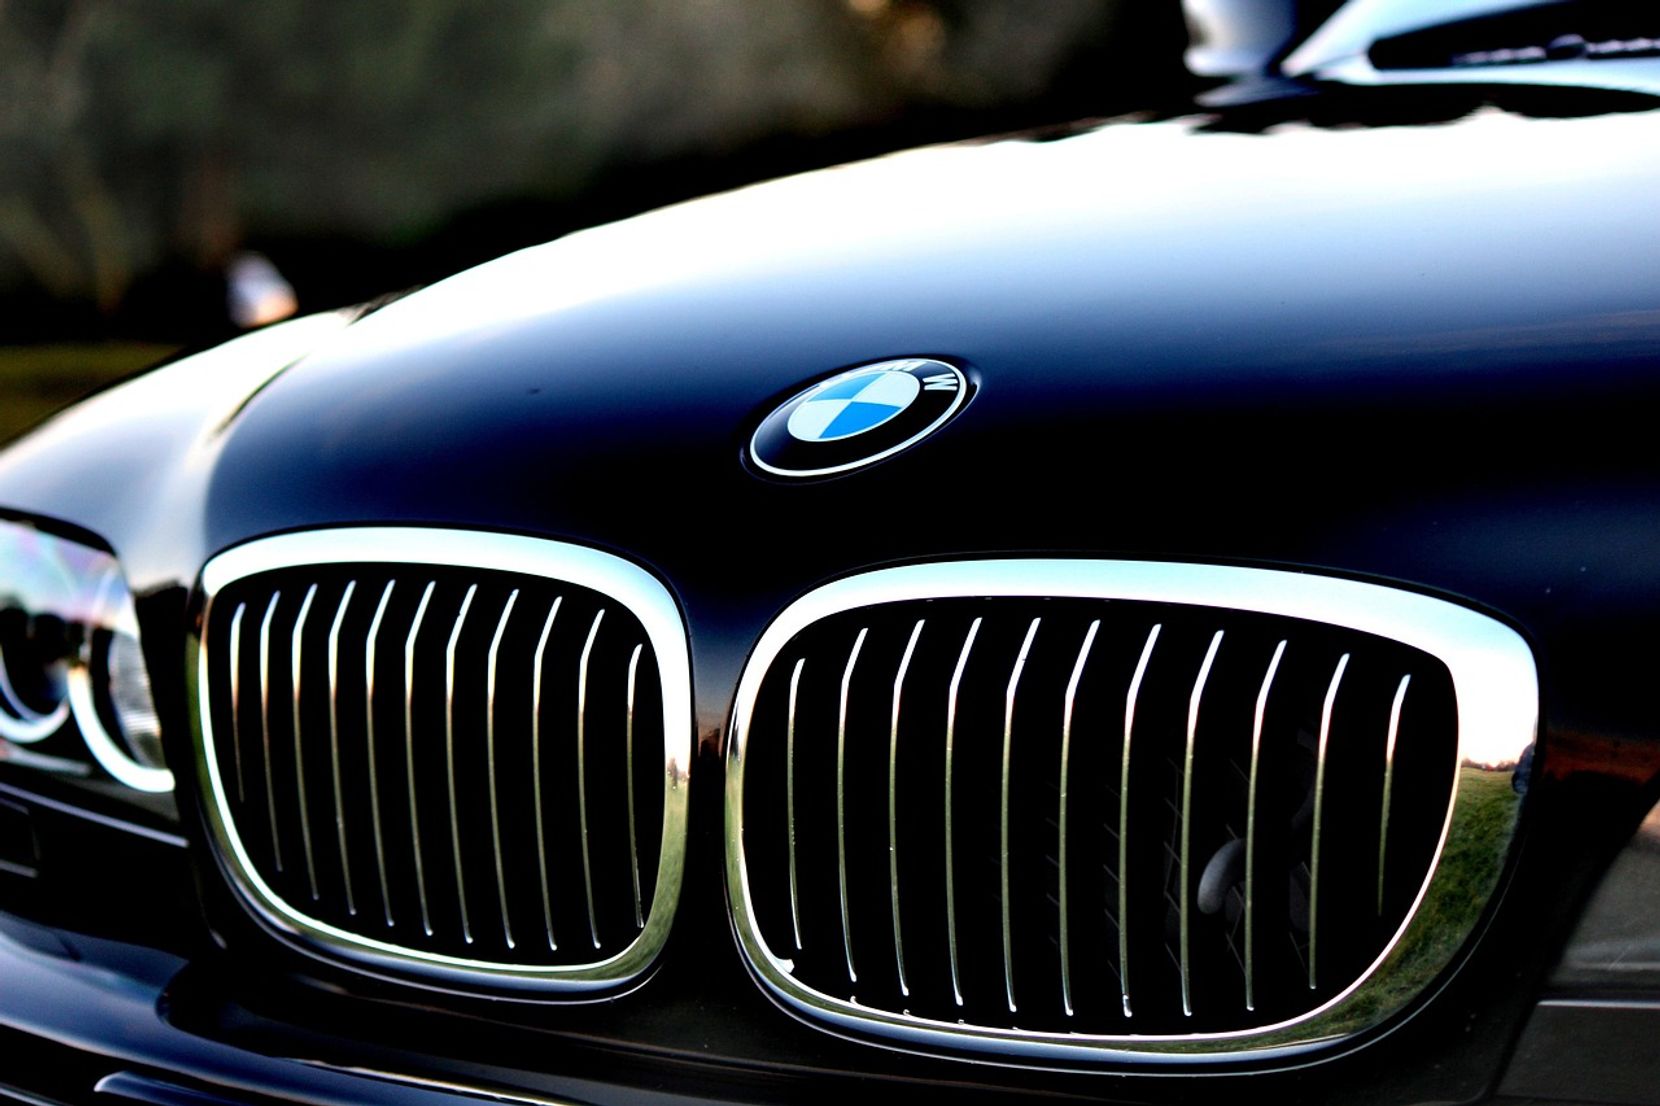 Frontansicht eindes BMW-Autos